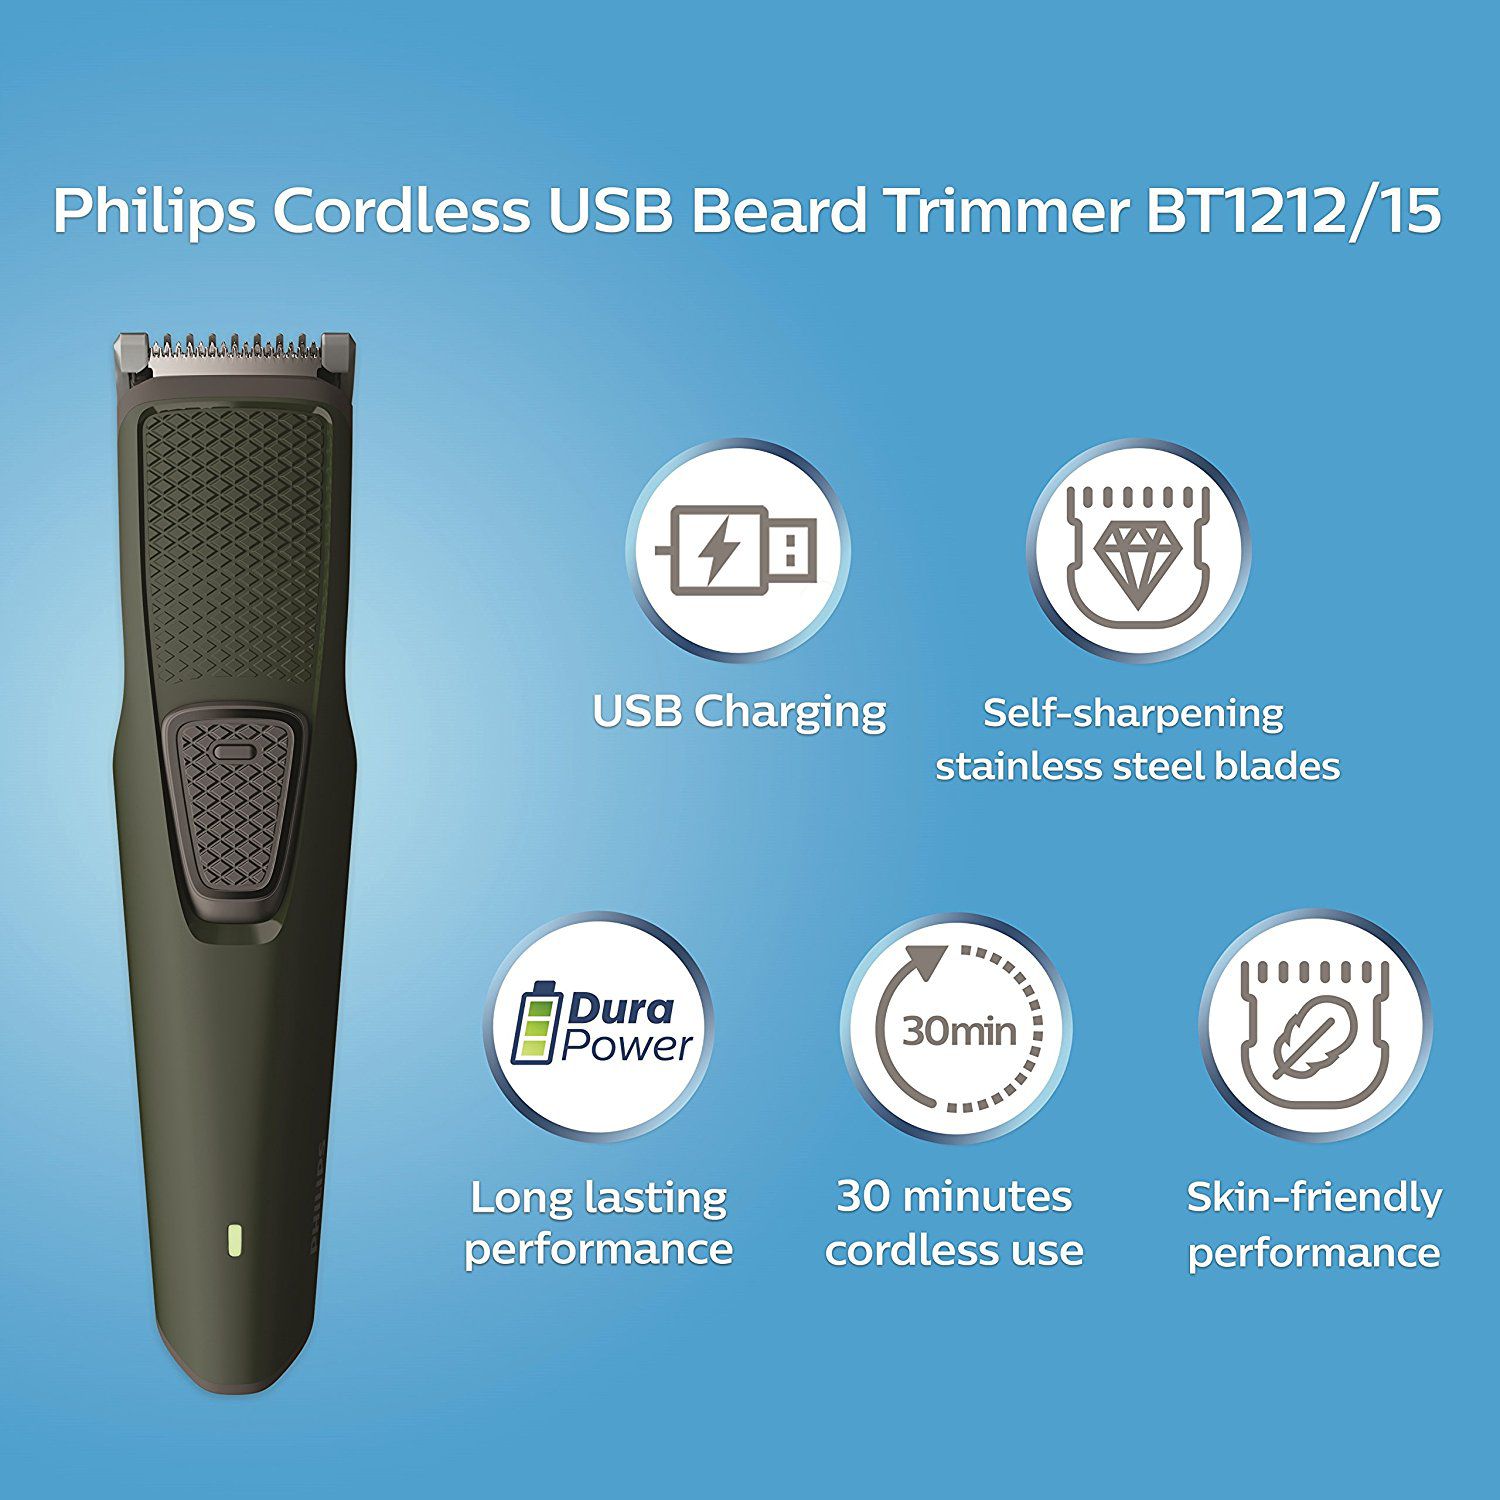 philips bt1212 trimmer price